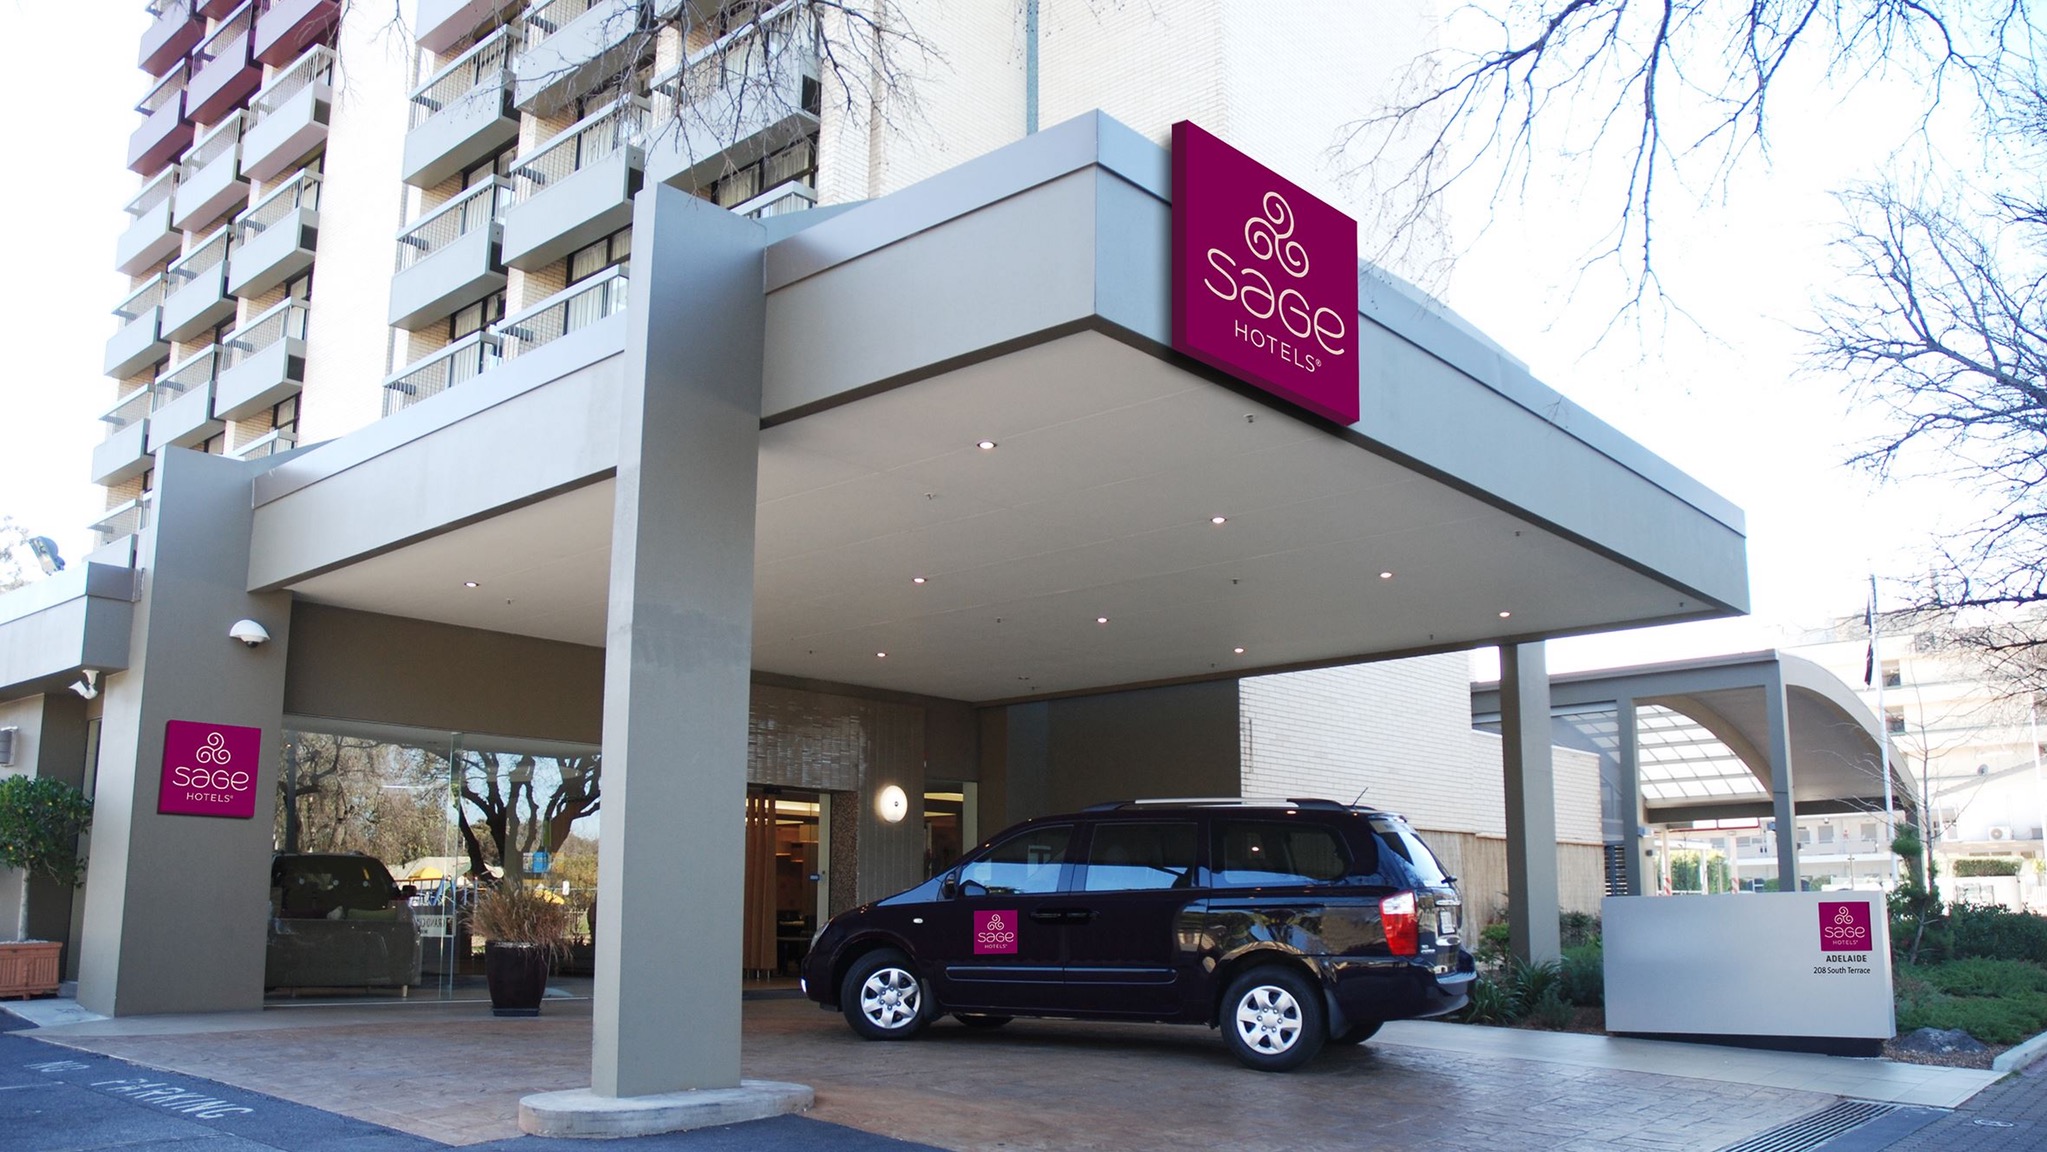 Sage Hotel Adelaide - Accommodation Newcastle 3